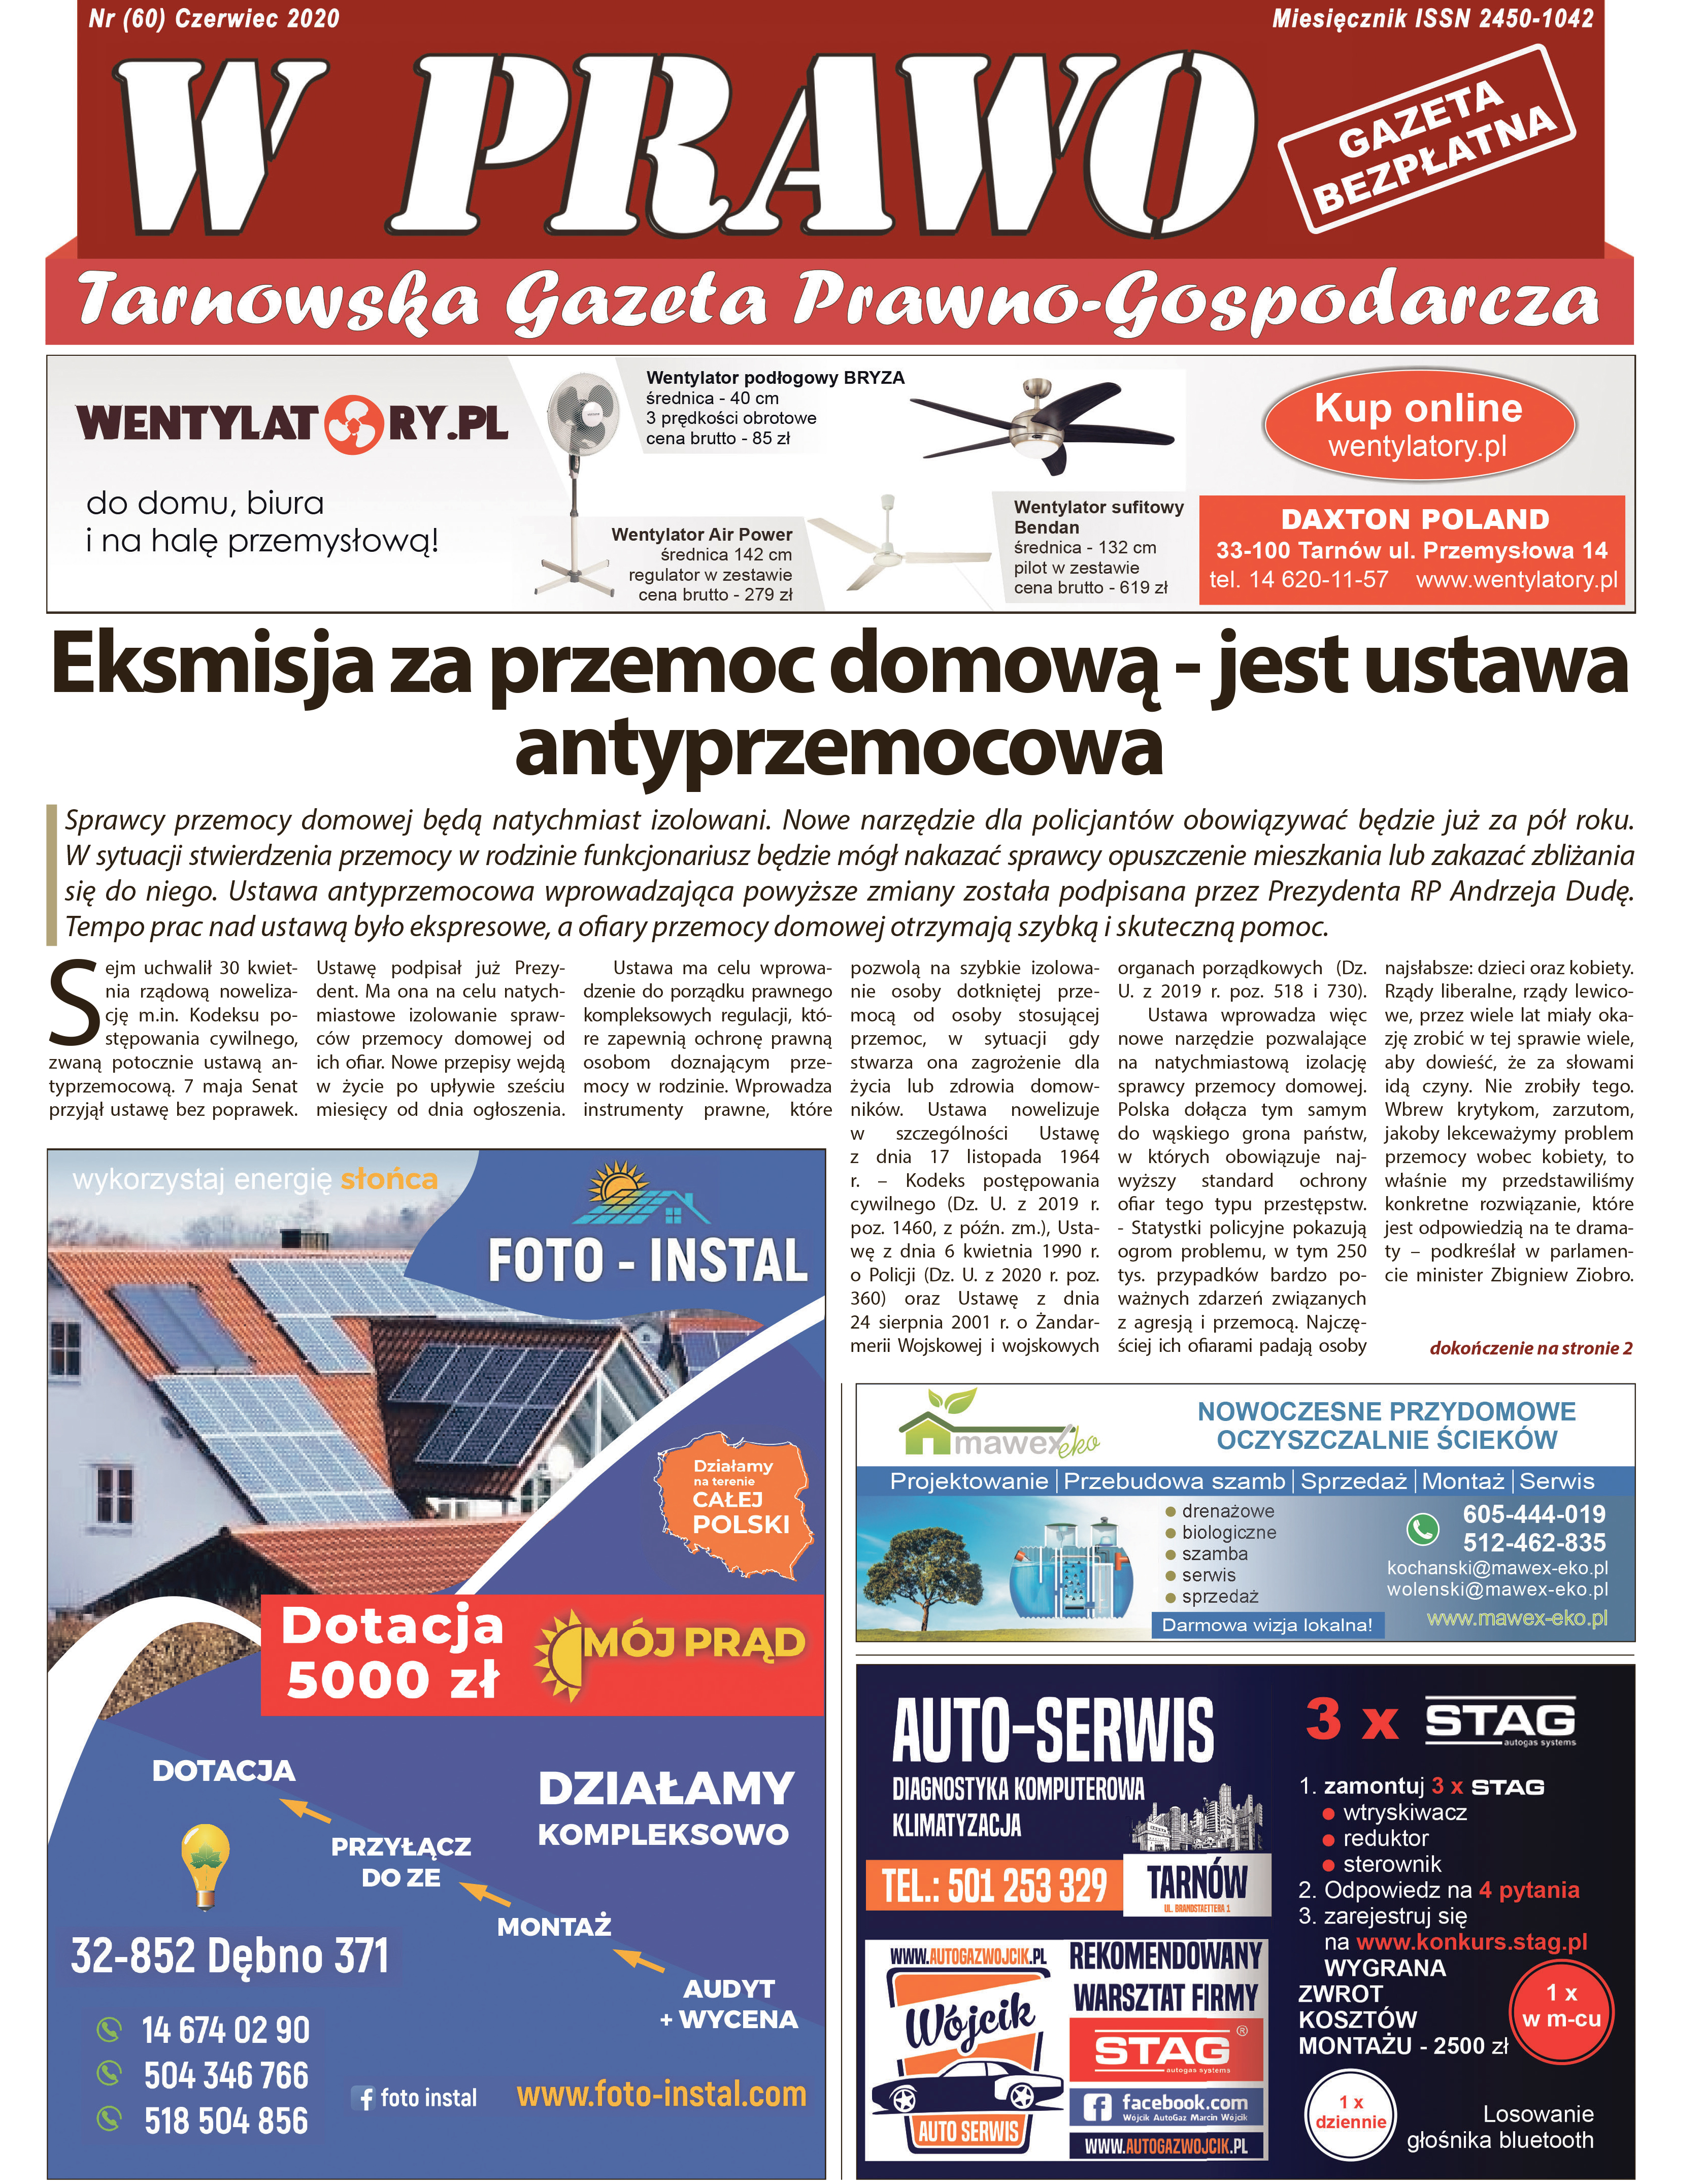 Najnowszy numer Tarnowskiej Gazety Prawno - Gospodarczej W PRAWO w dniu dzisiejszym jest dystrybuowany na obszarze.. ziemi tarnowskiej. 